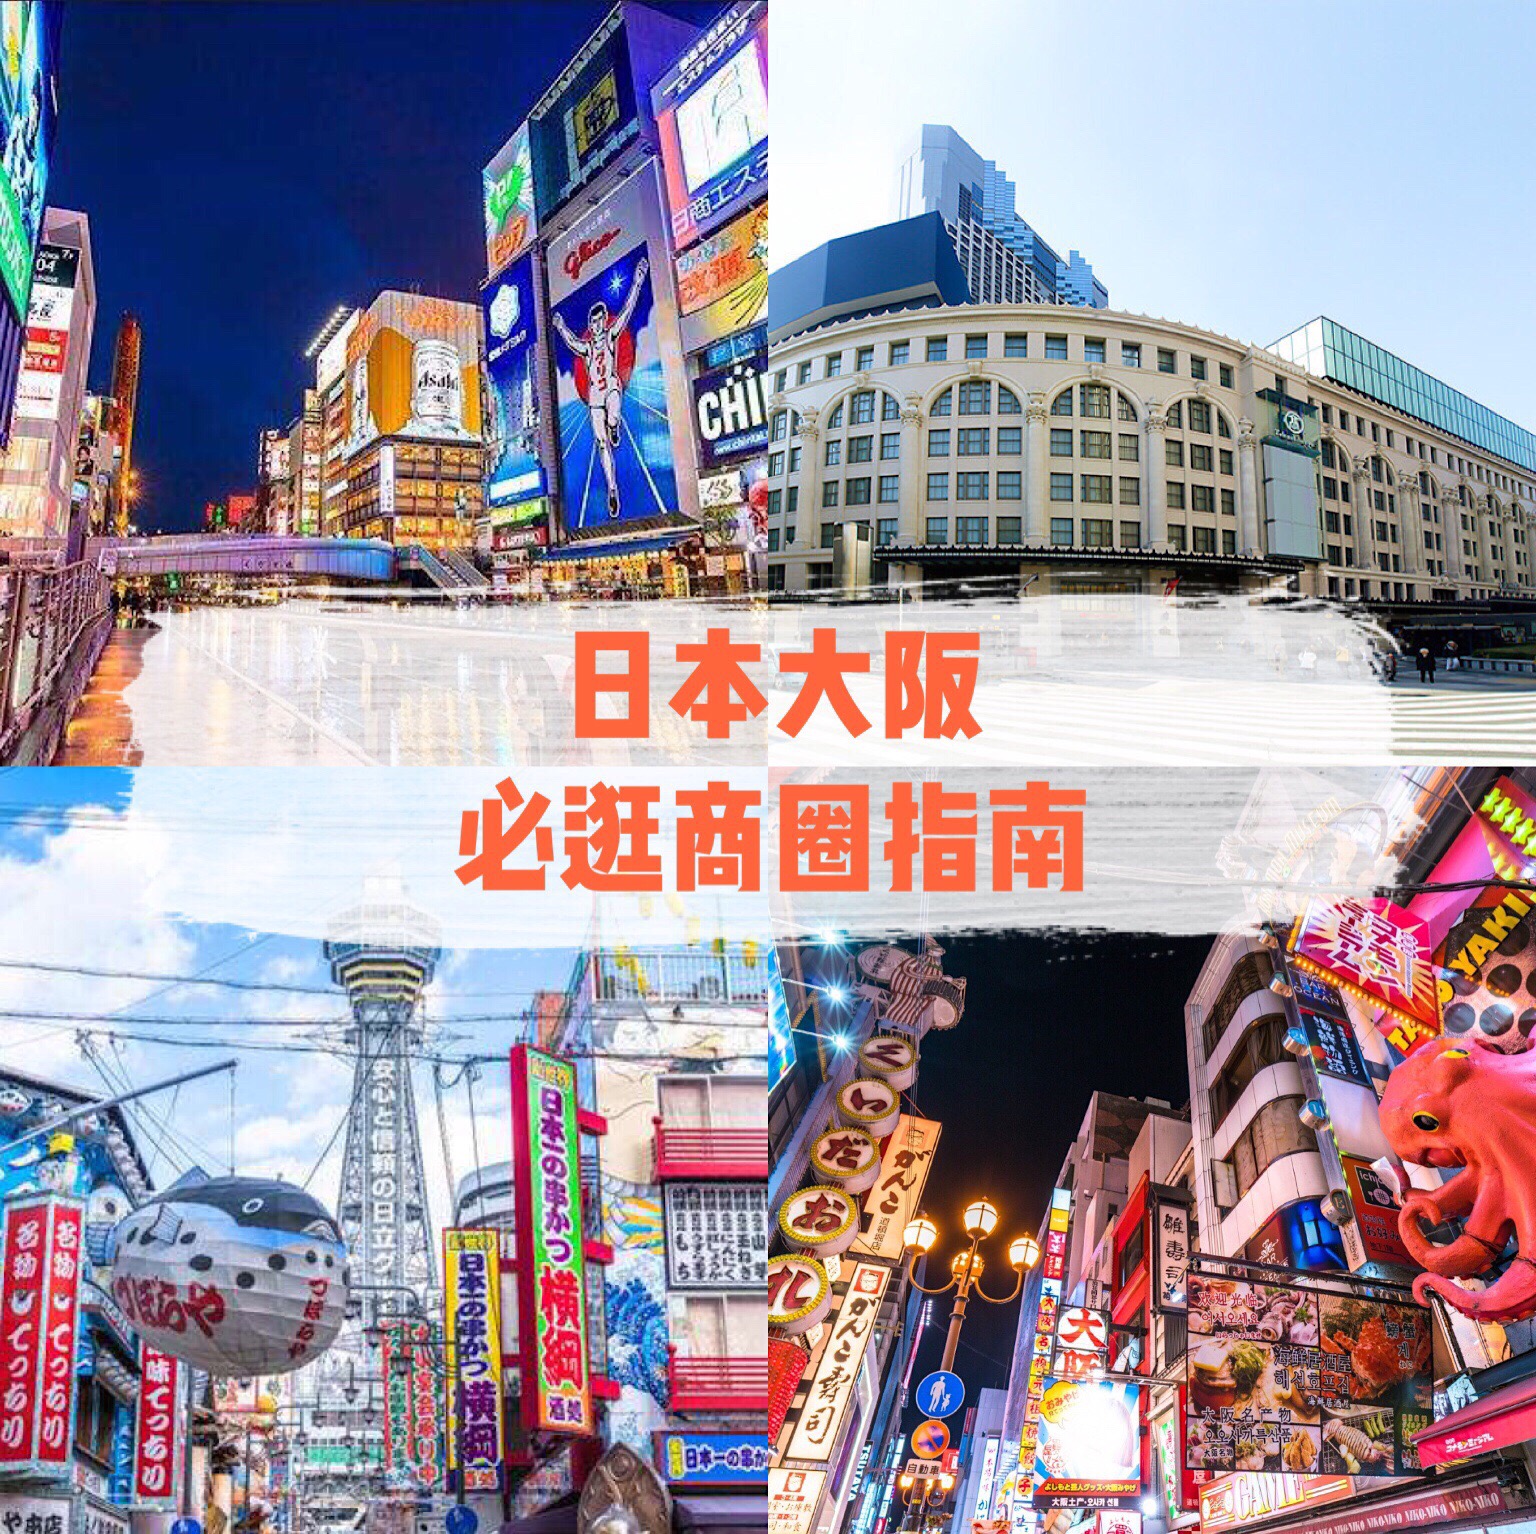 【大阪必逛商圈看这一篇就够了】 大阪是关西地区购物血拼的胜地。店铺密集，各种档次的店铺齐备，打折季节